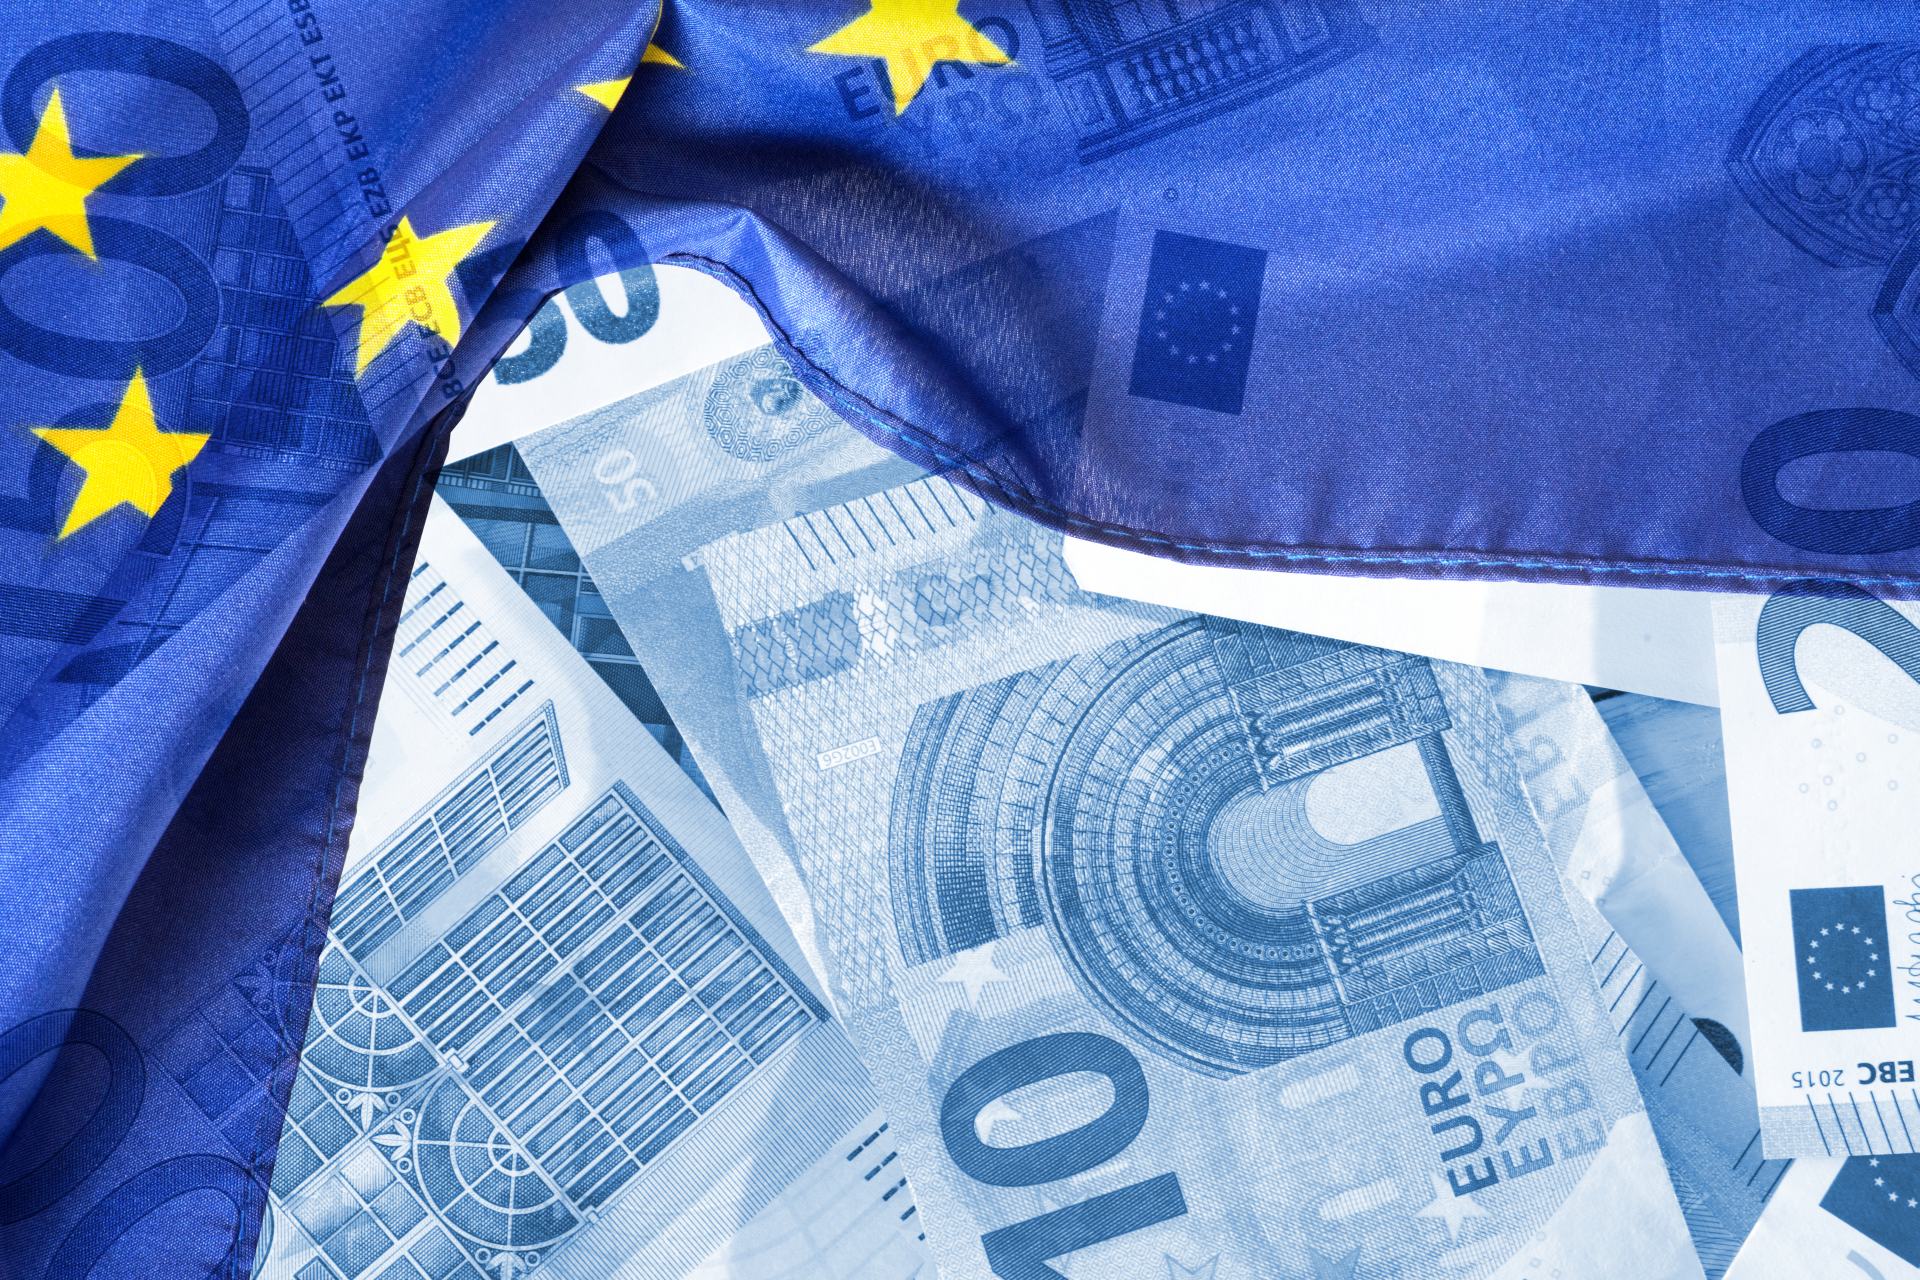  EU USA hospodářství finance sazby ECB Fed 